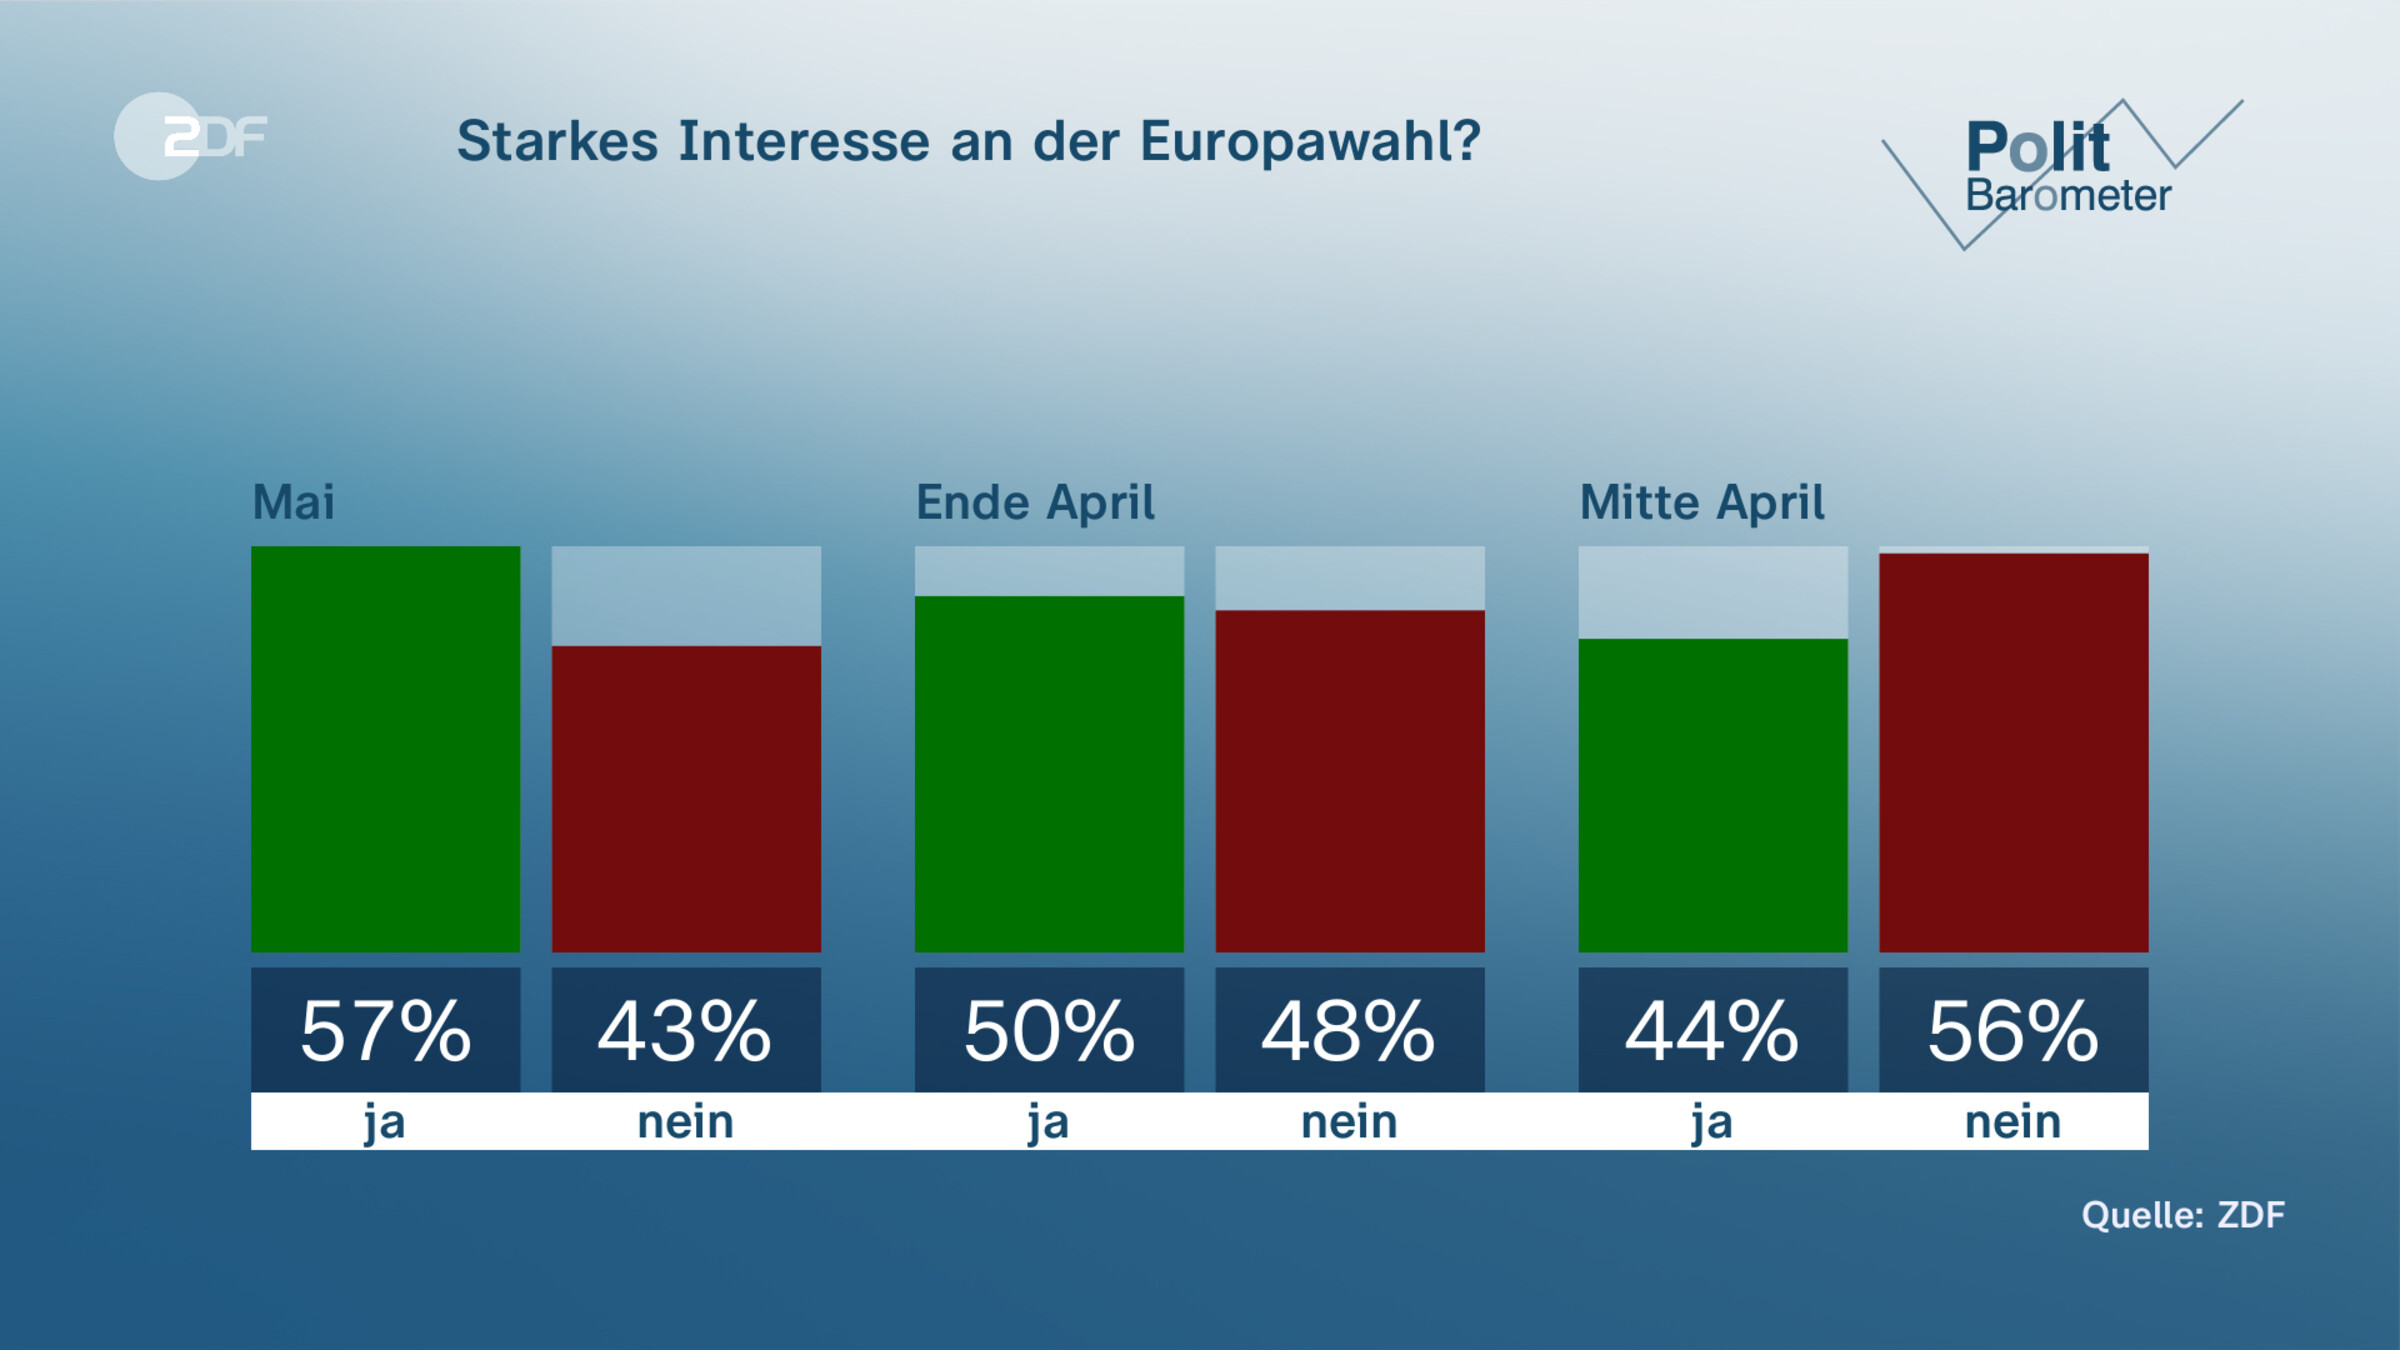 Starkes Interesse an der Europawahl?